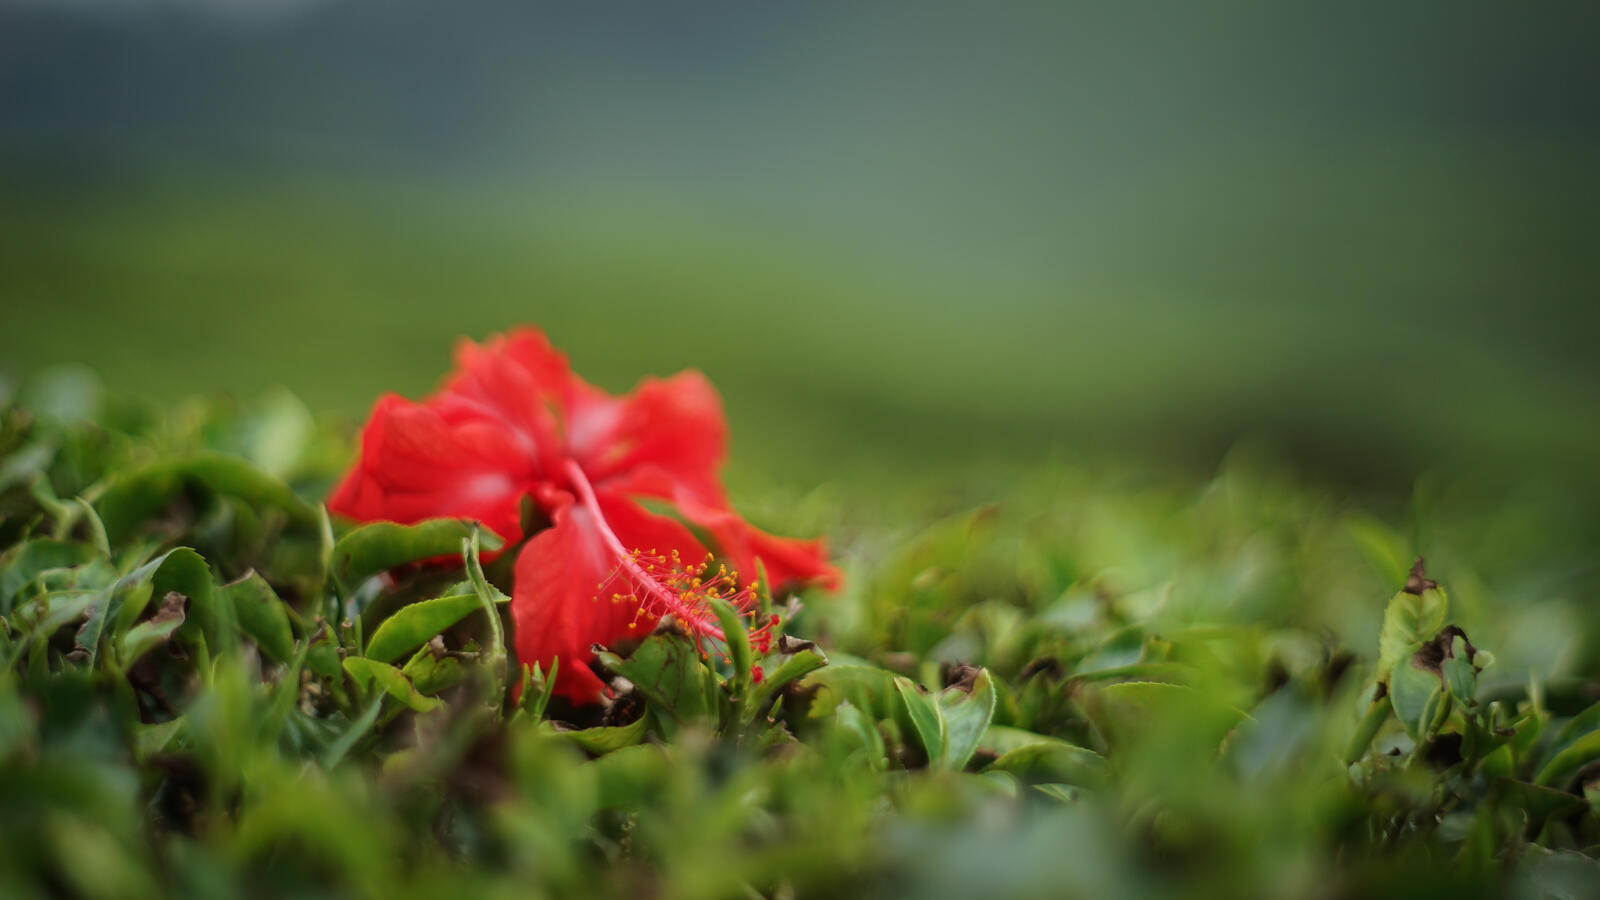 Бесплатное фото Красный цветочек лежит на зеленой траве